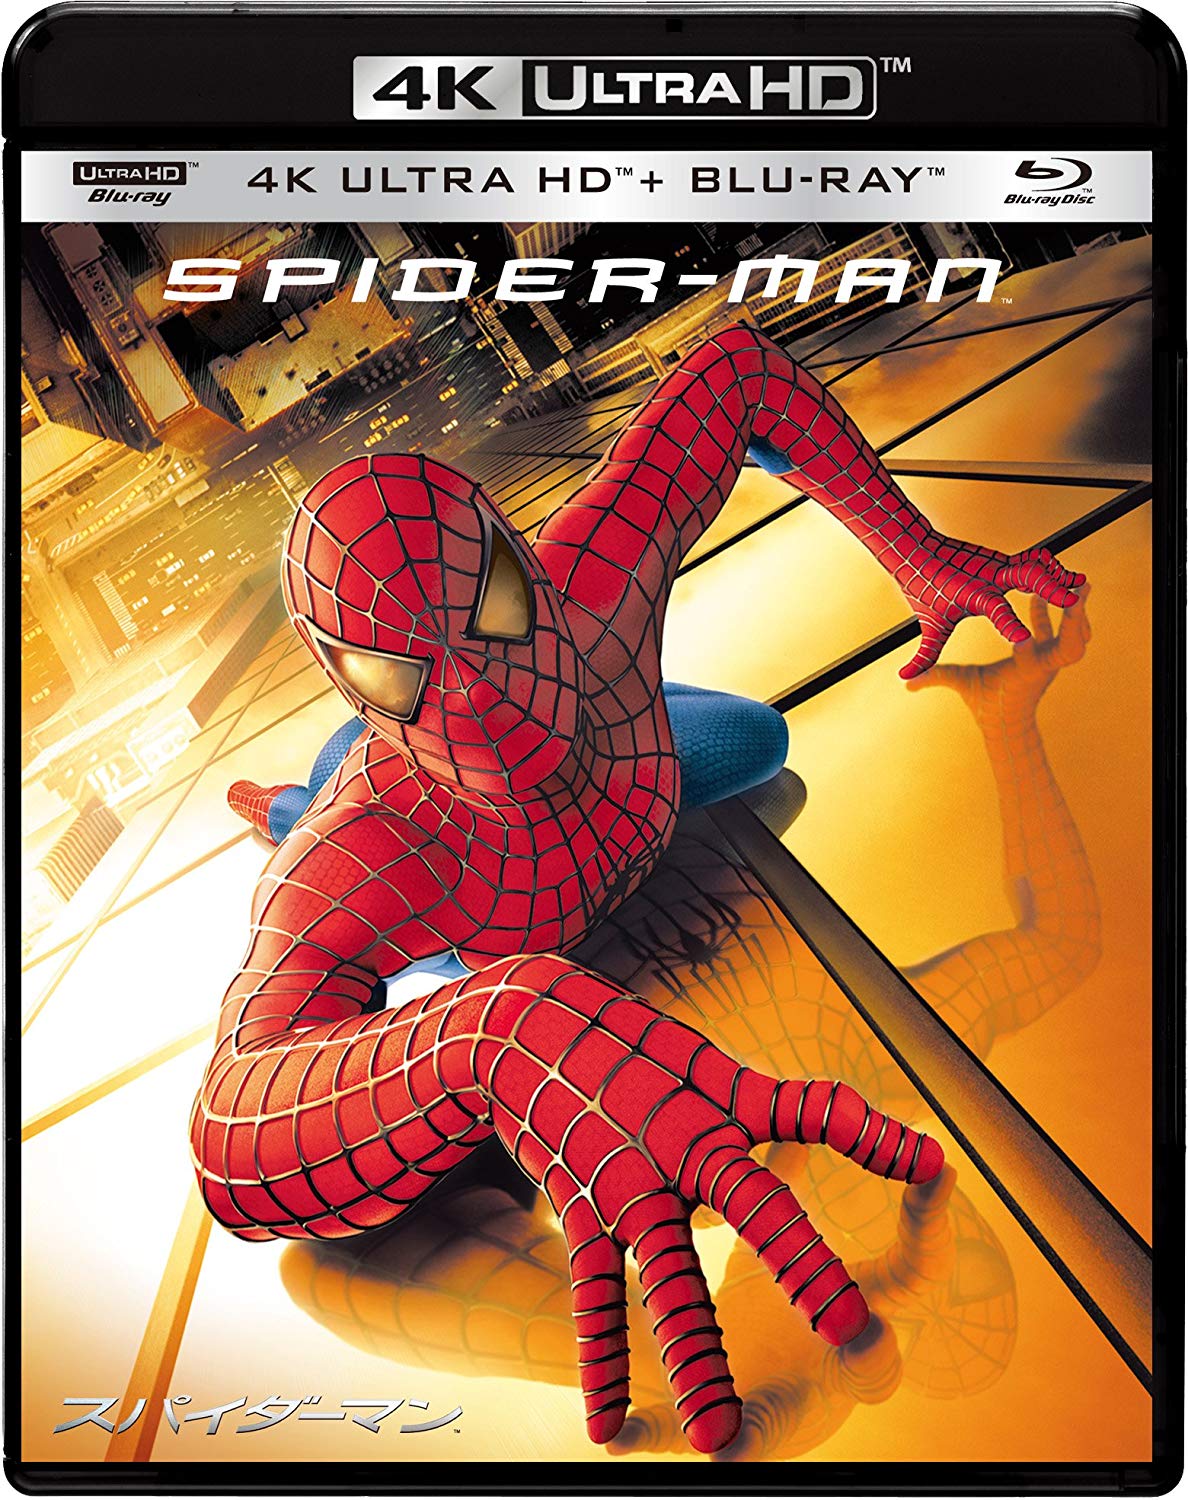 スパイダーマンの実写映画はサム ライミ版に限る となりの映画館チャンネル